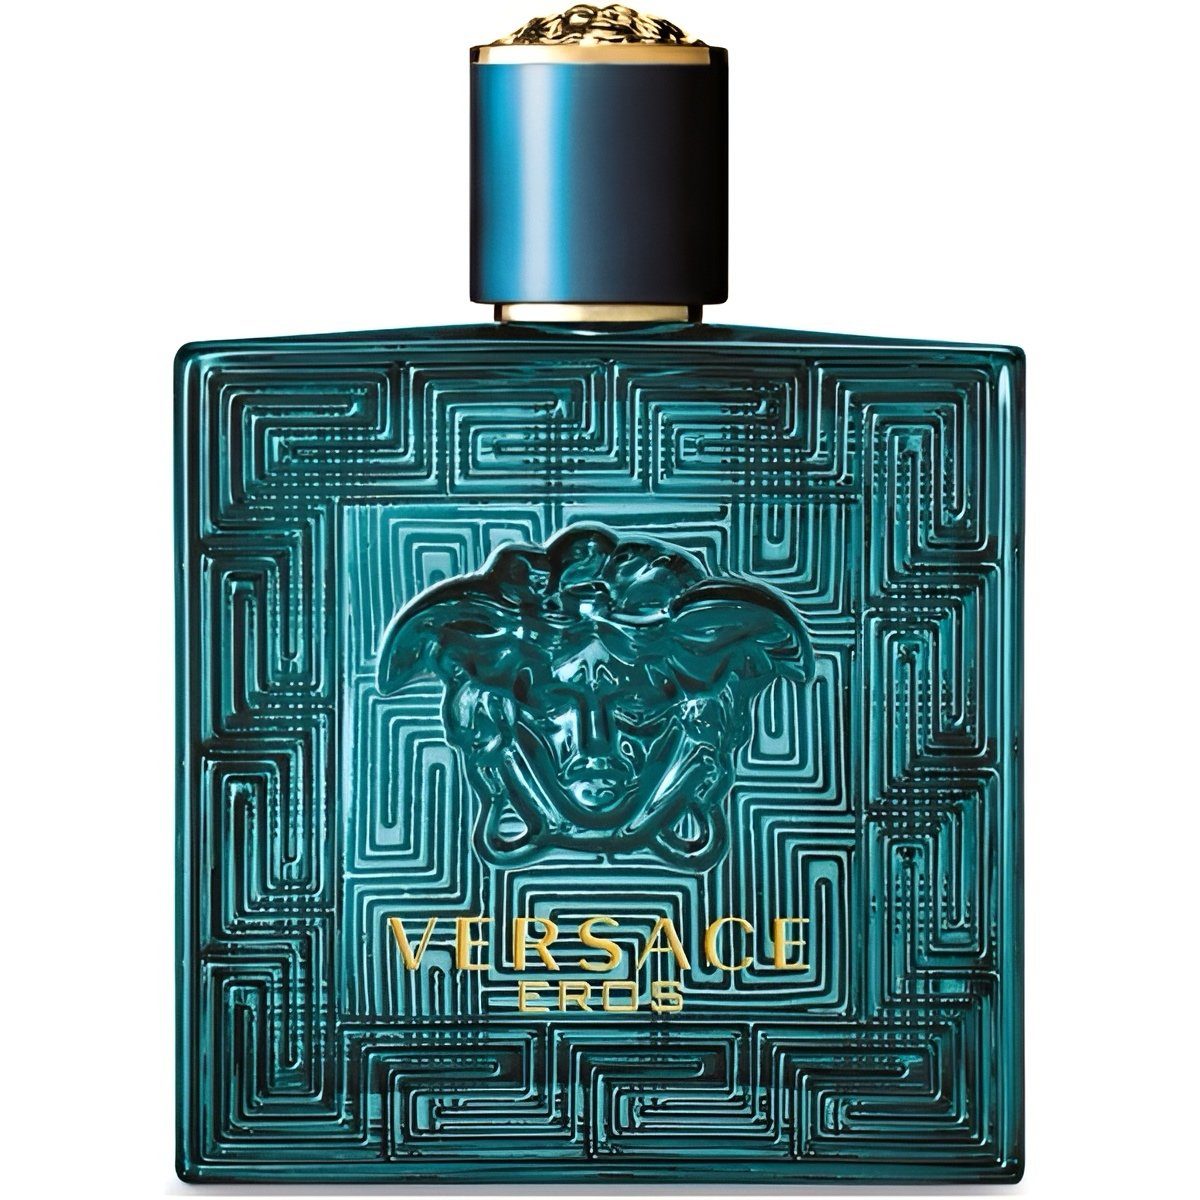 Versace Duft-Set Man Flame Versace Miniaturen Eau Man Eros 4-tlg., pour Herren, Eros Eau für Homme Versace Set Parfum, Versace Eros Fraîche, de